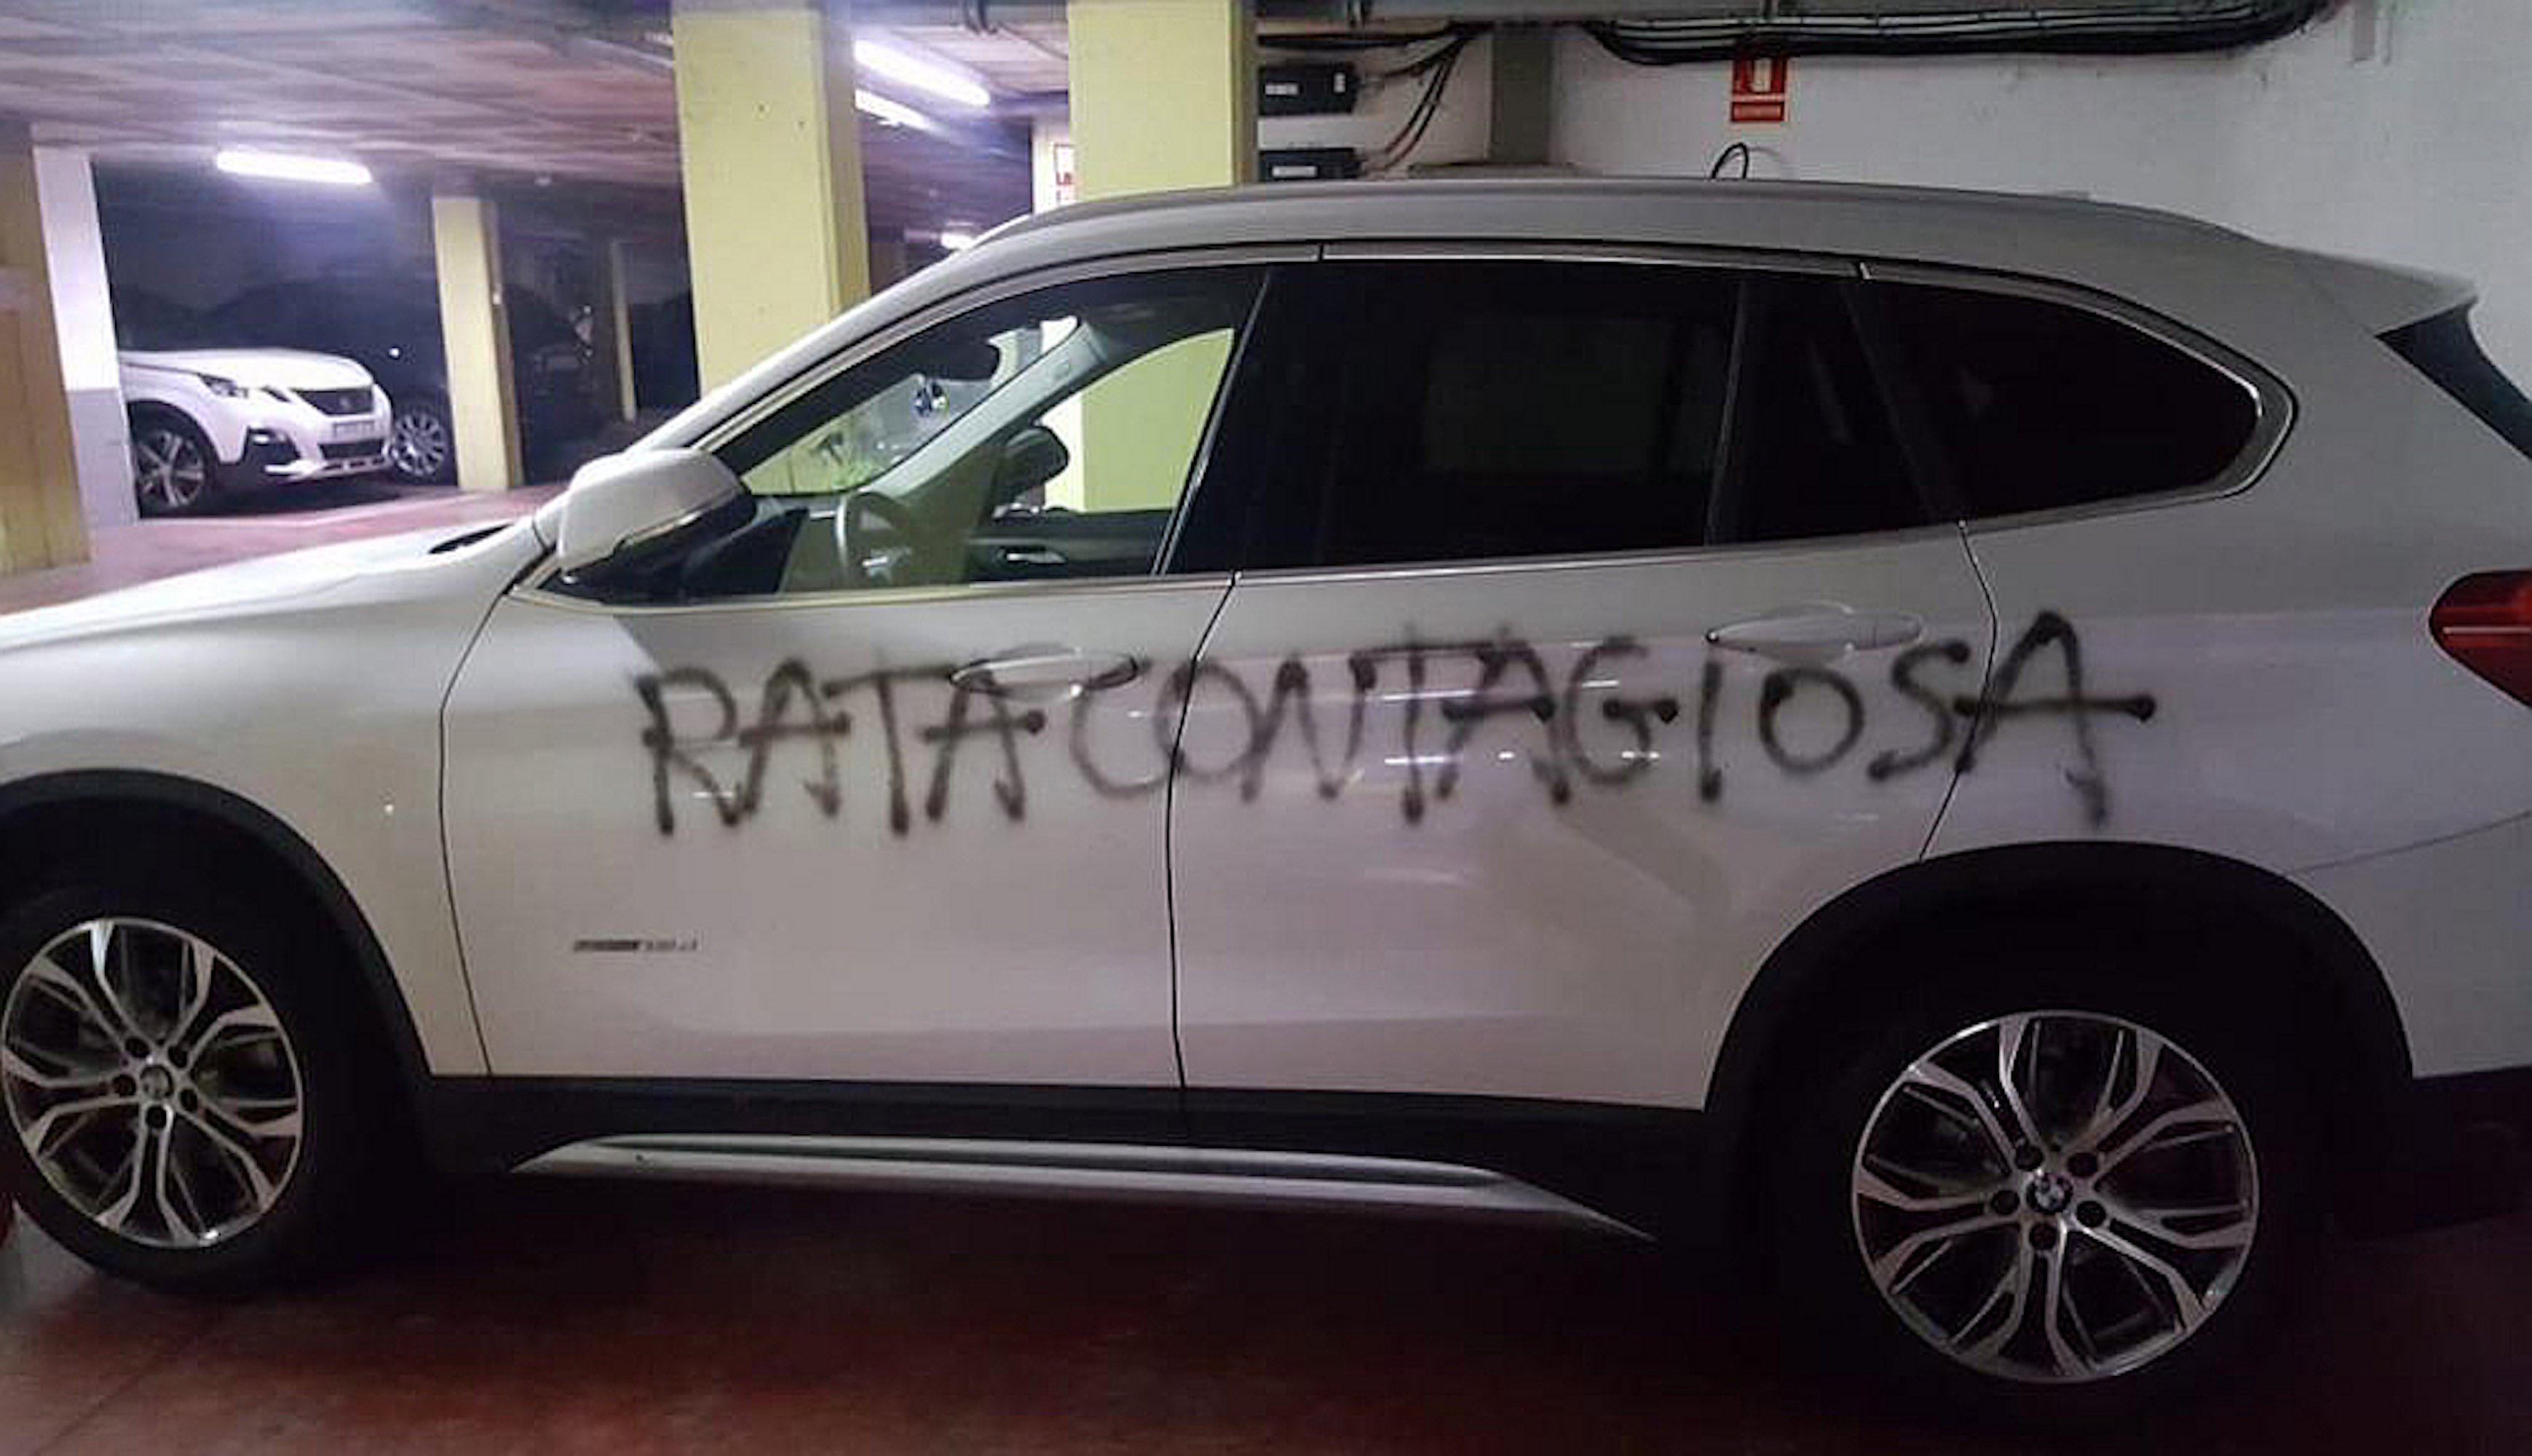 Escriuen "rata contagiosa" al cotxe d'una metgessa ginecòloga de Barcelona